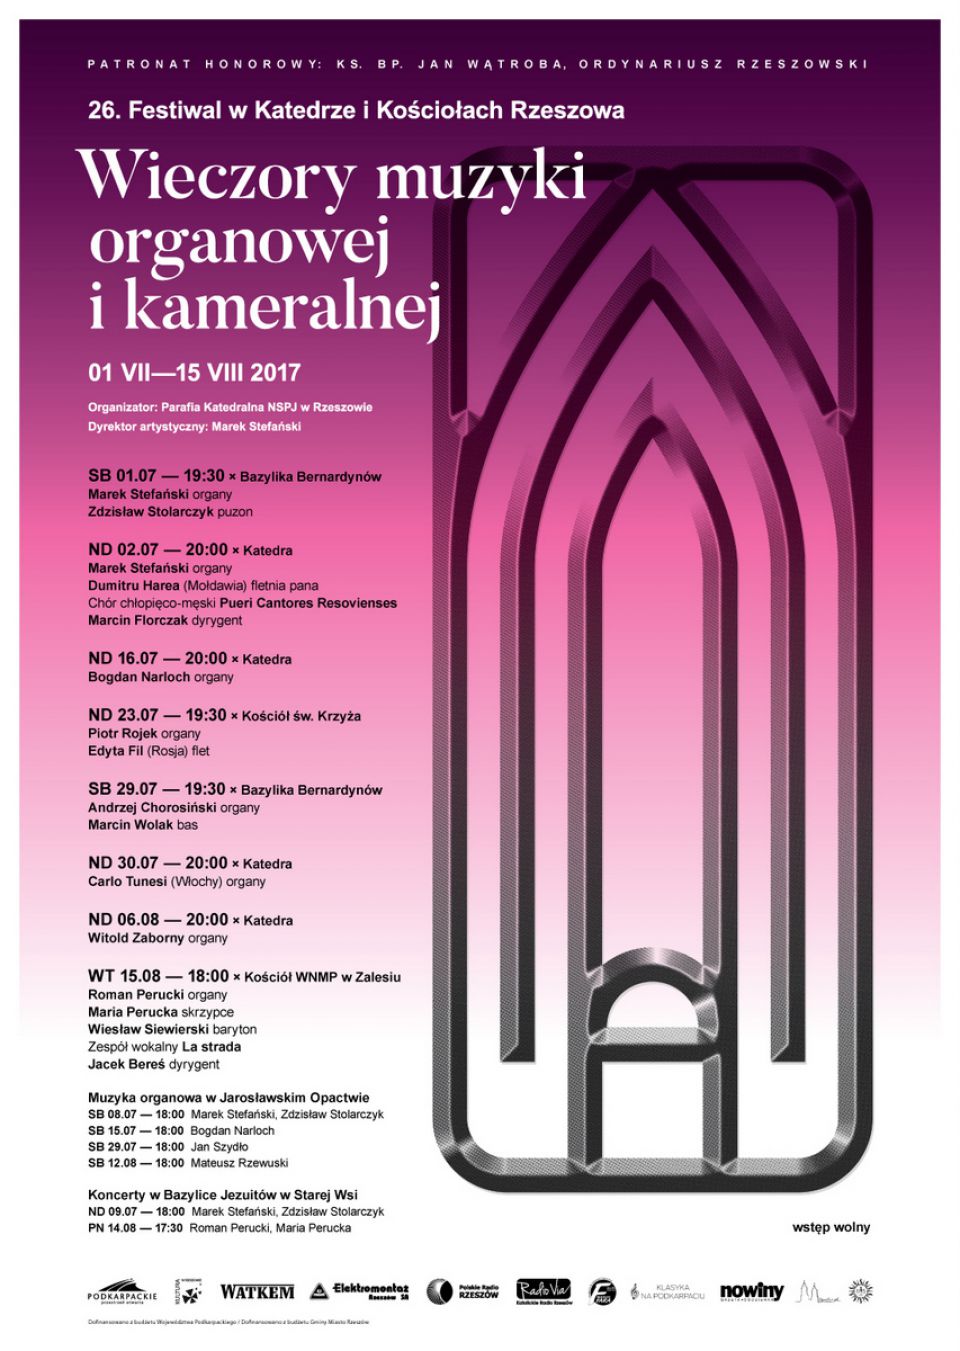 Inauguracja Festiwalu w Rzeszowskich Świątyniach